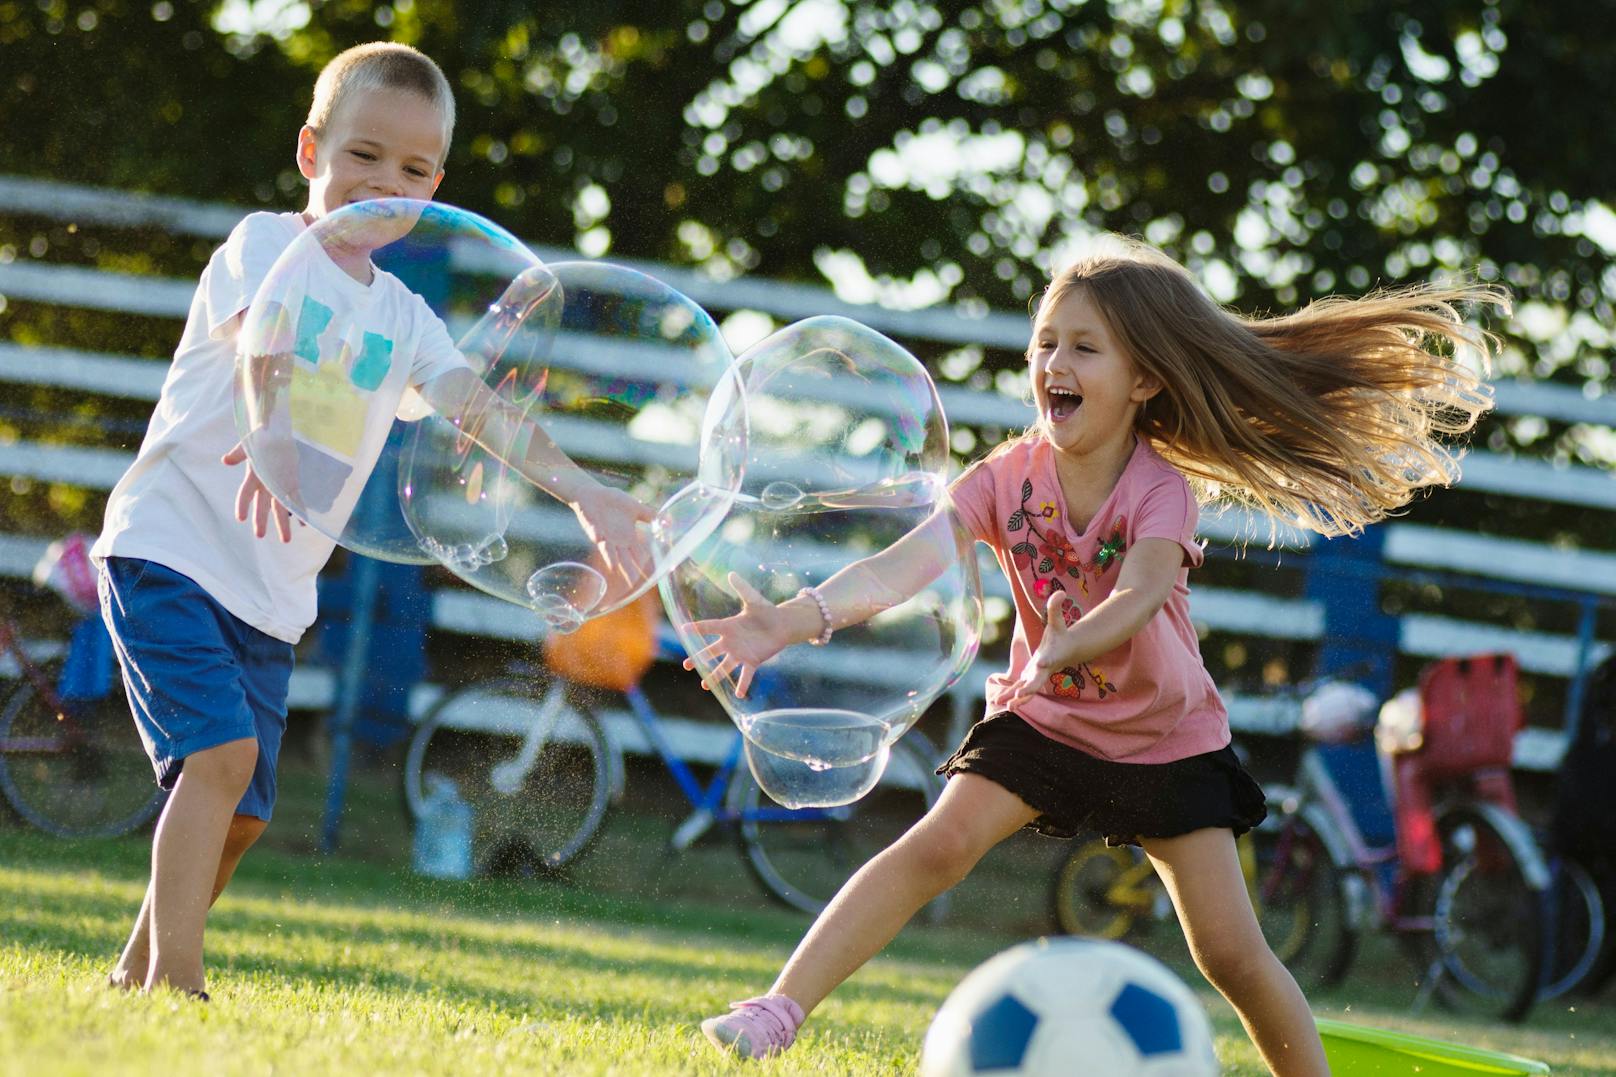 Neben Clownerie gibt es Riesenseifenblasen als Rahmenprogramm beim Kinderflohmarkt.